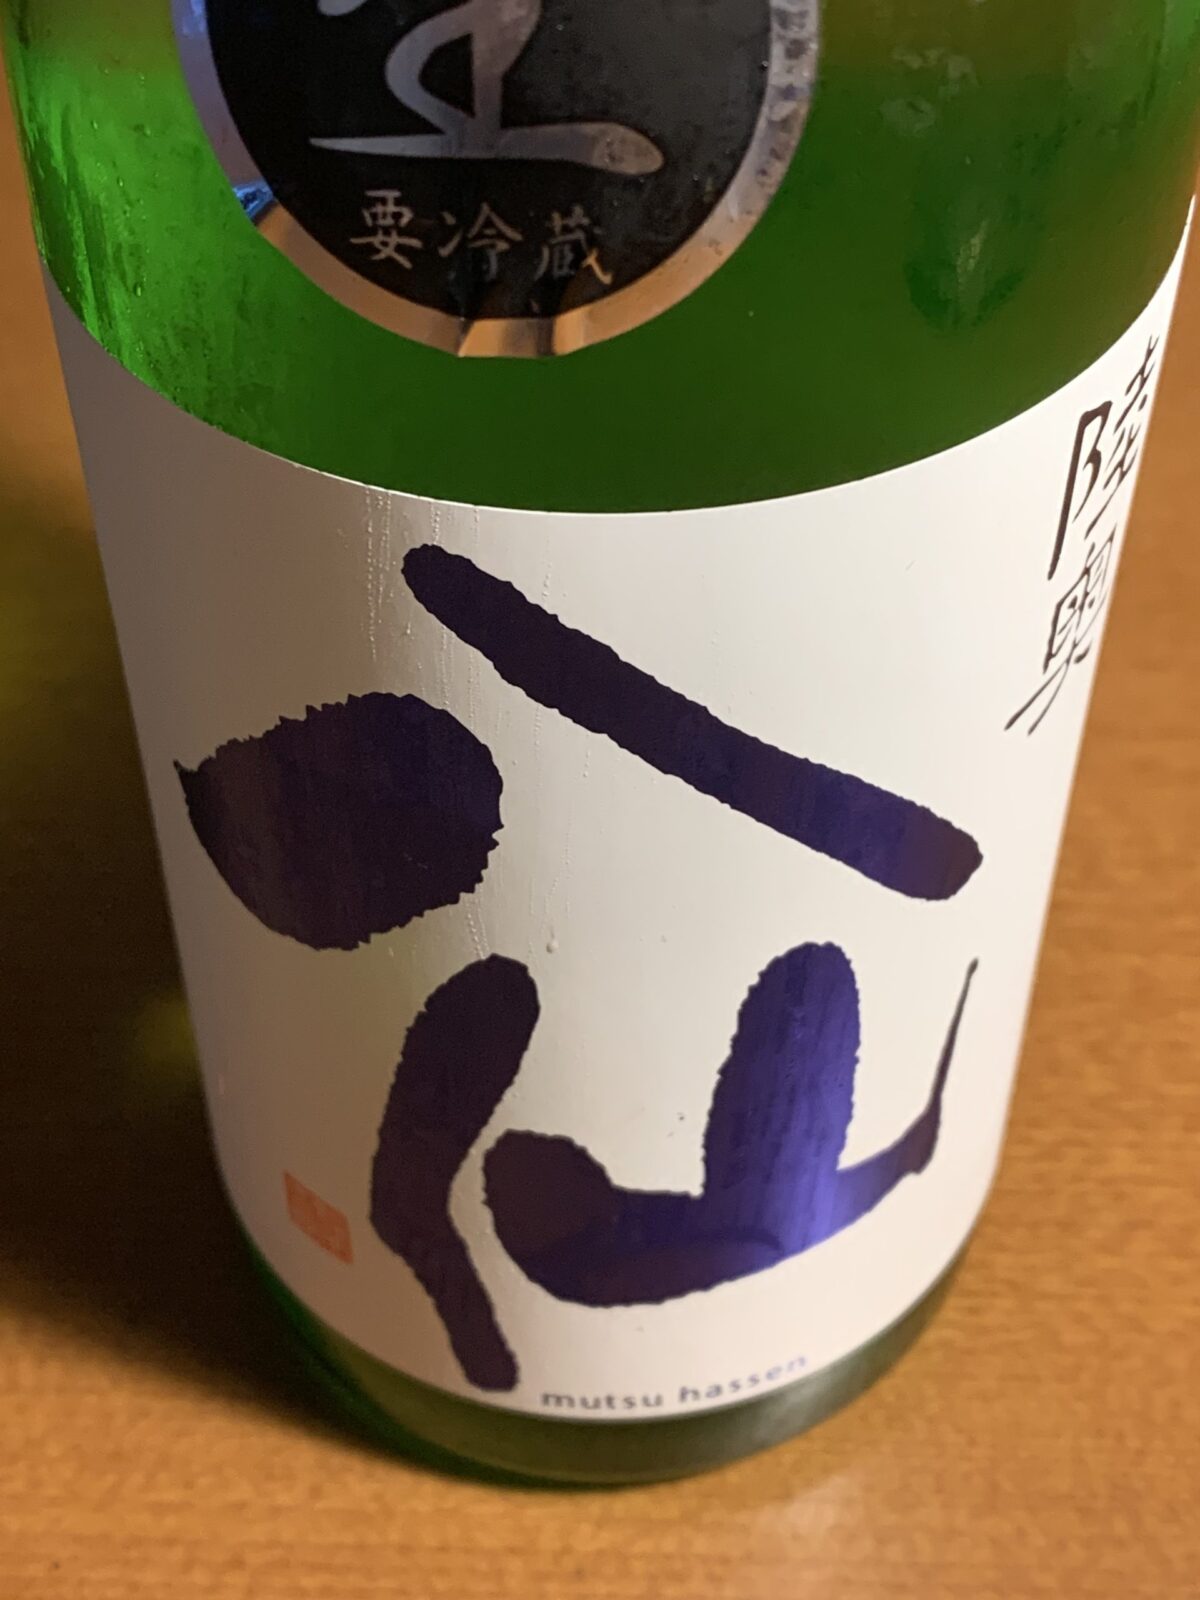 青森の『陸奥八仙ヌーボー』は新酒の香りと果実感満載の旨口のお酒